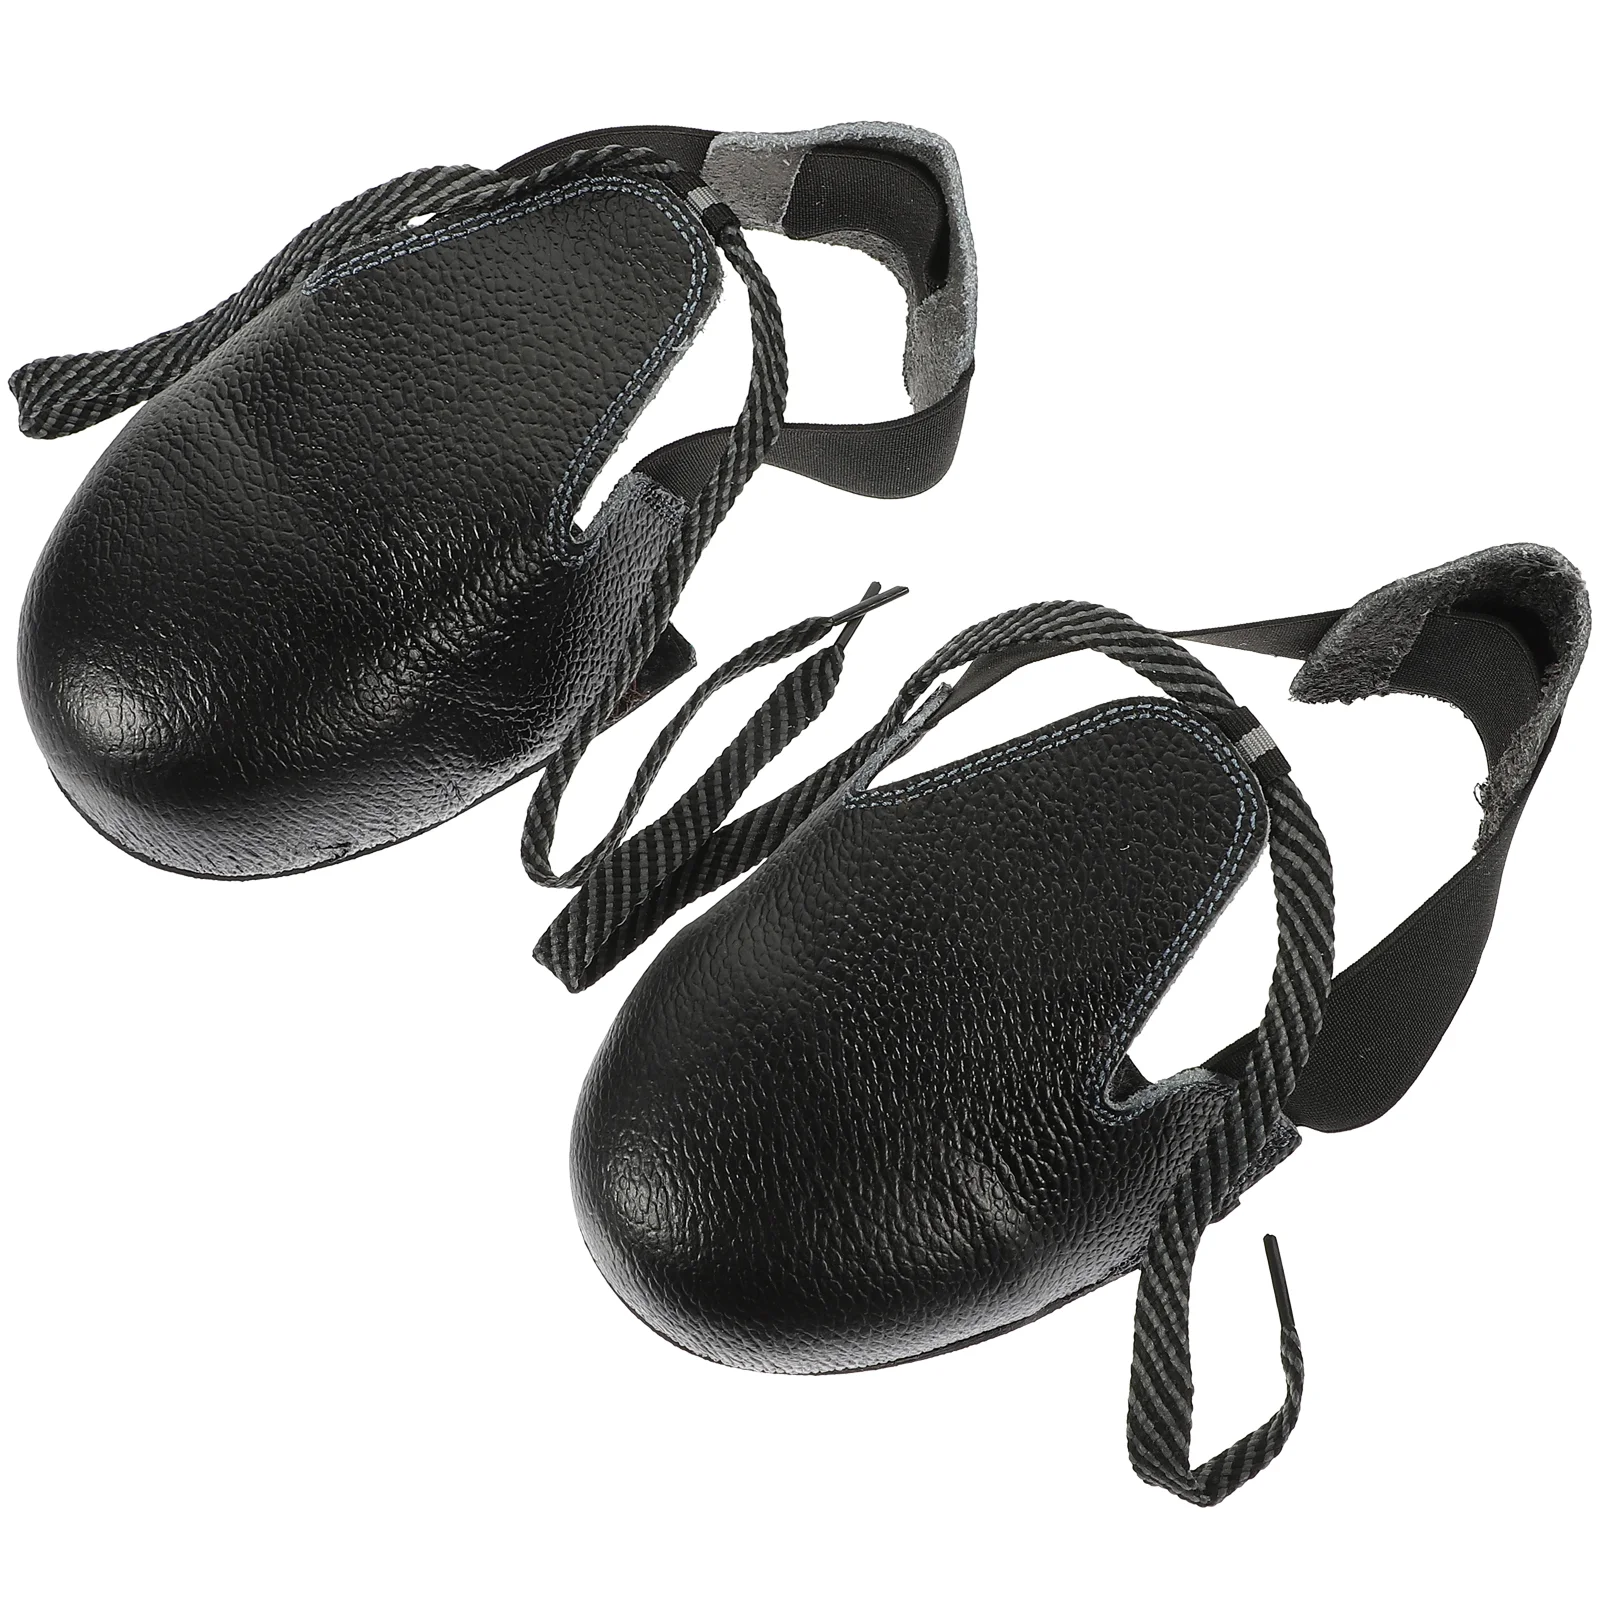 1 пара стальных носочных вставок для обуви, защитные галоши со стальным носком, универсальные бахилы, прочные защитные галоши для промышленности